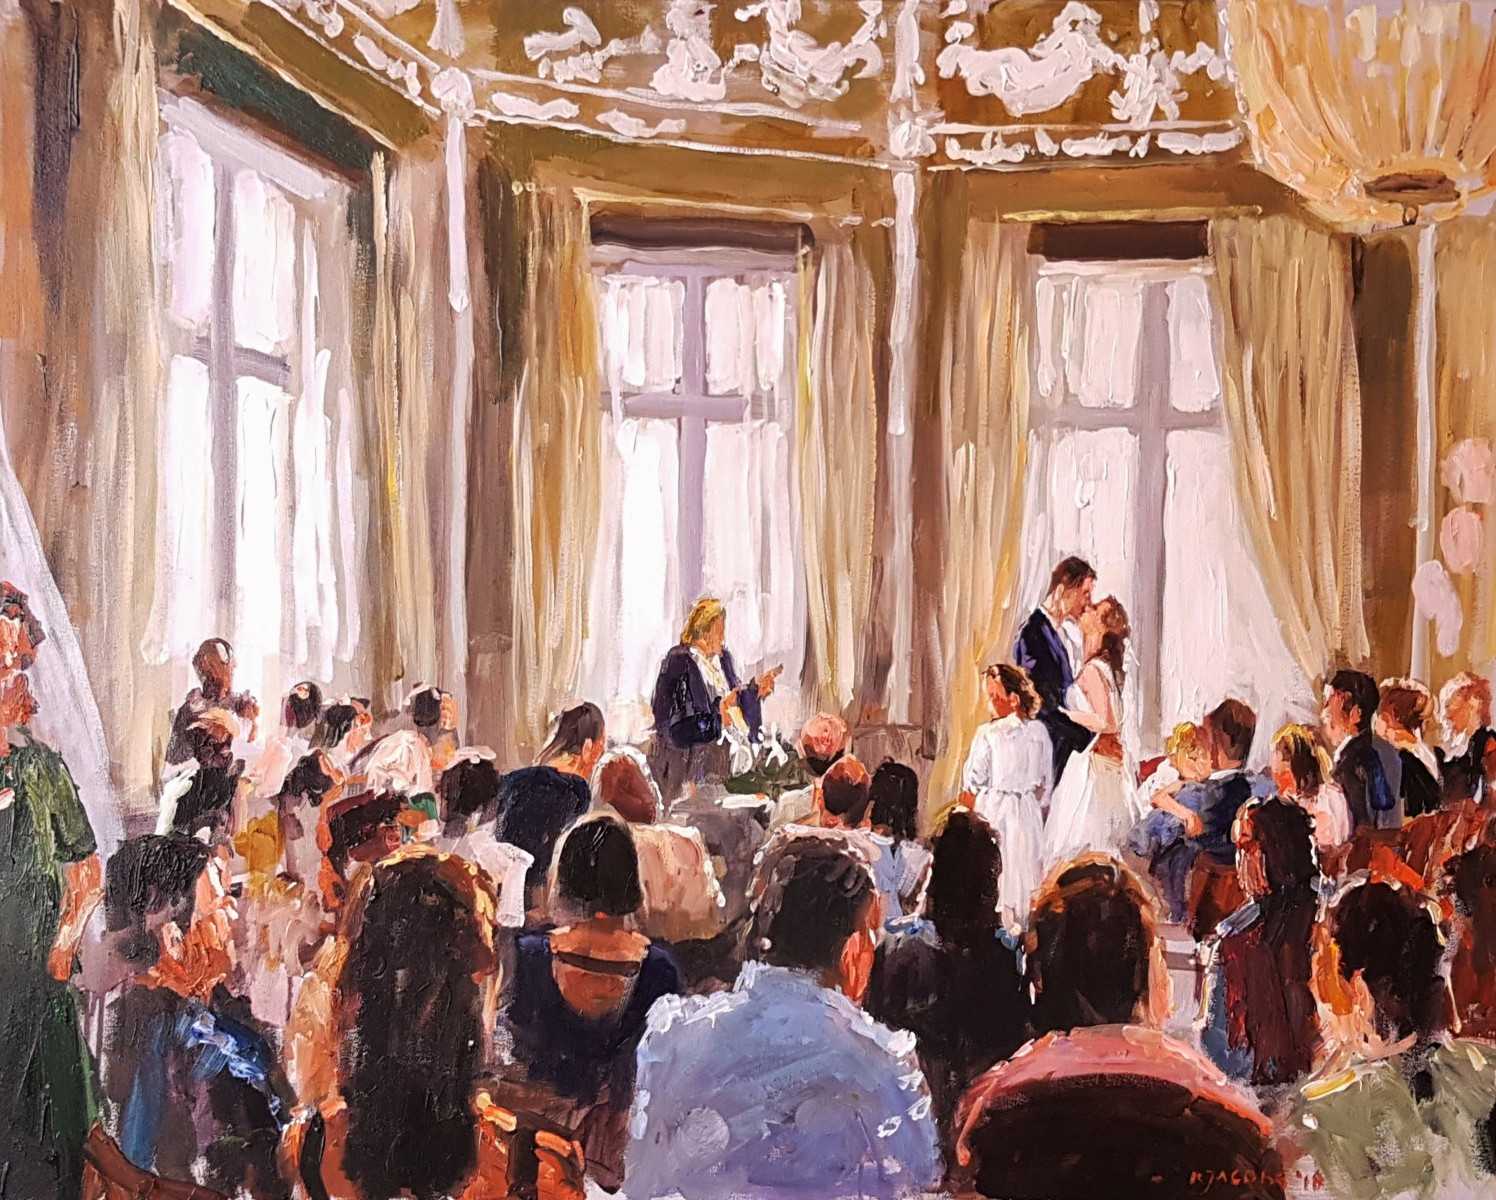 Rob Jacobs schildert doek van 80x100cm, tijdens trouwceremonie, in Zuid-Holland te Scheveningen.